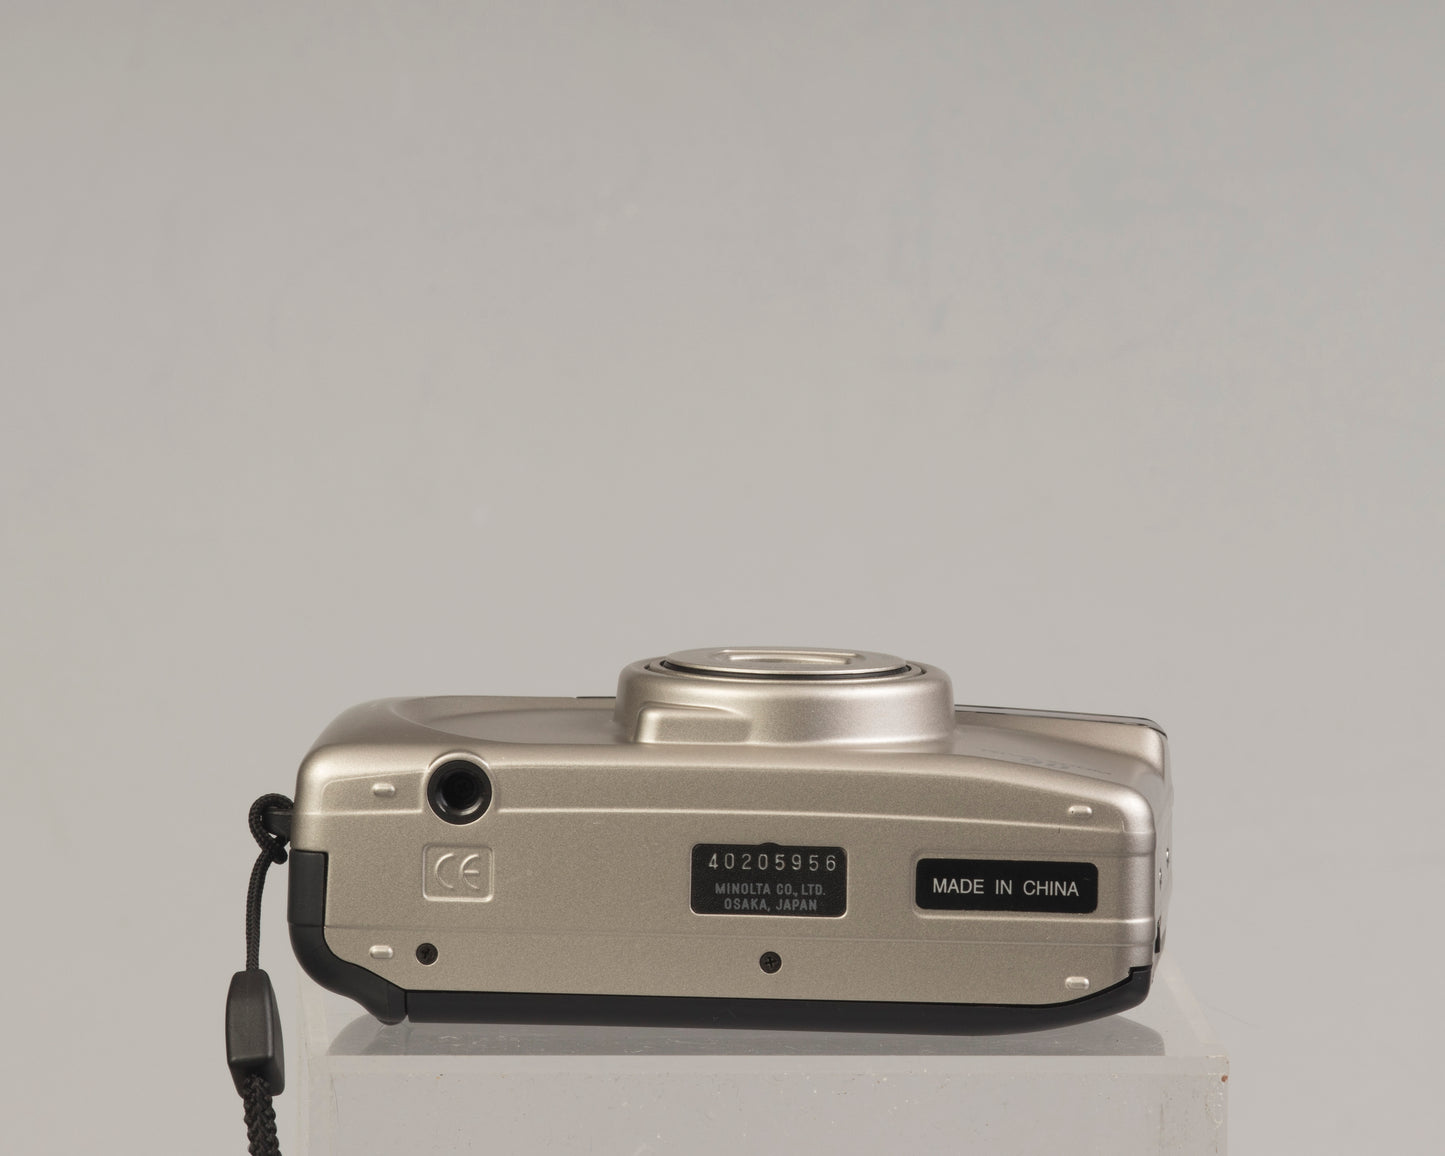 Minolta Riva Zoom 35mm camera (serial 40205956)